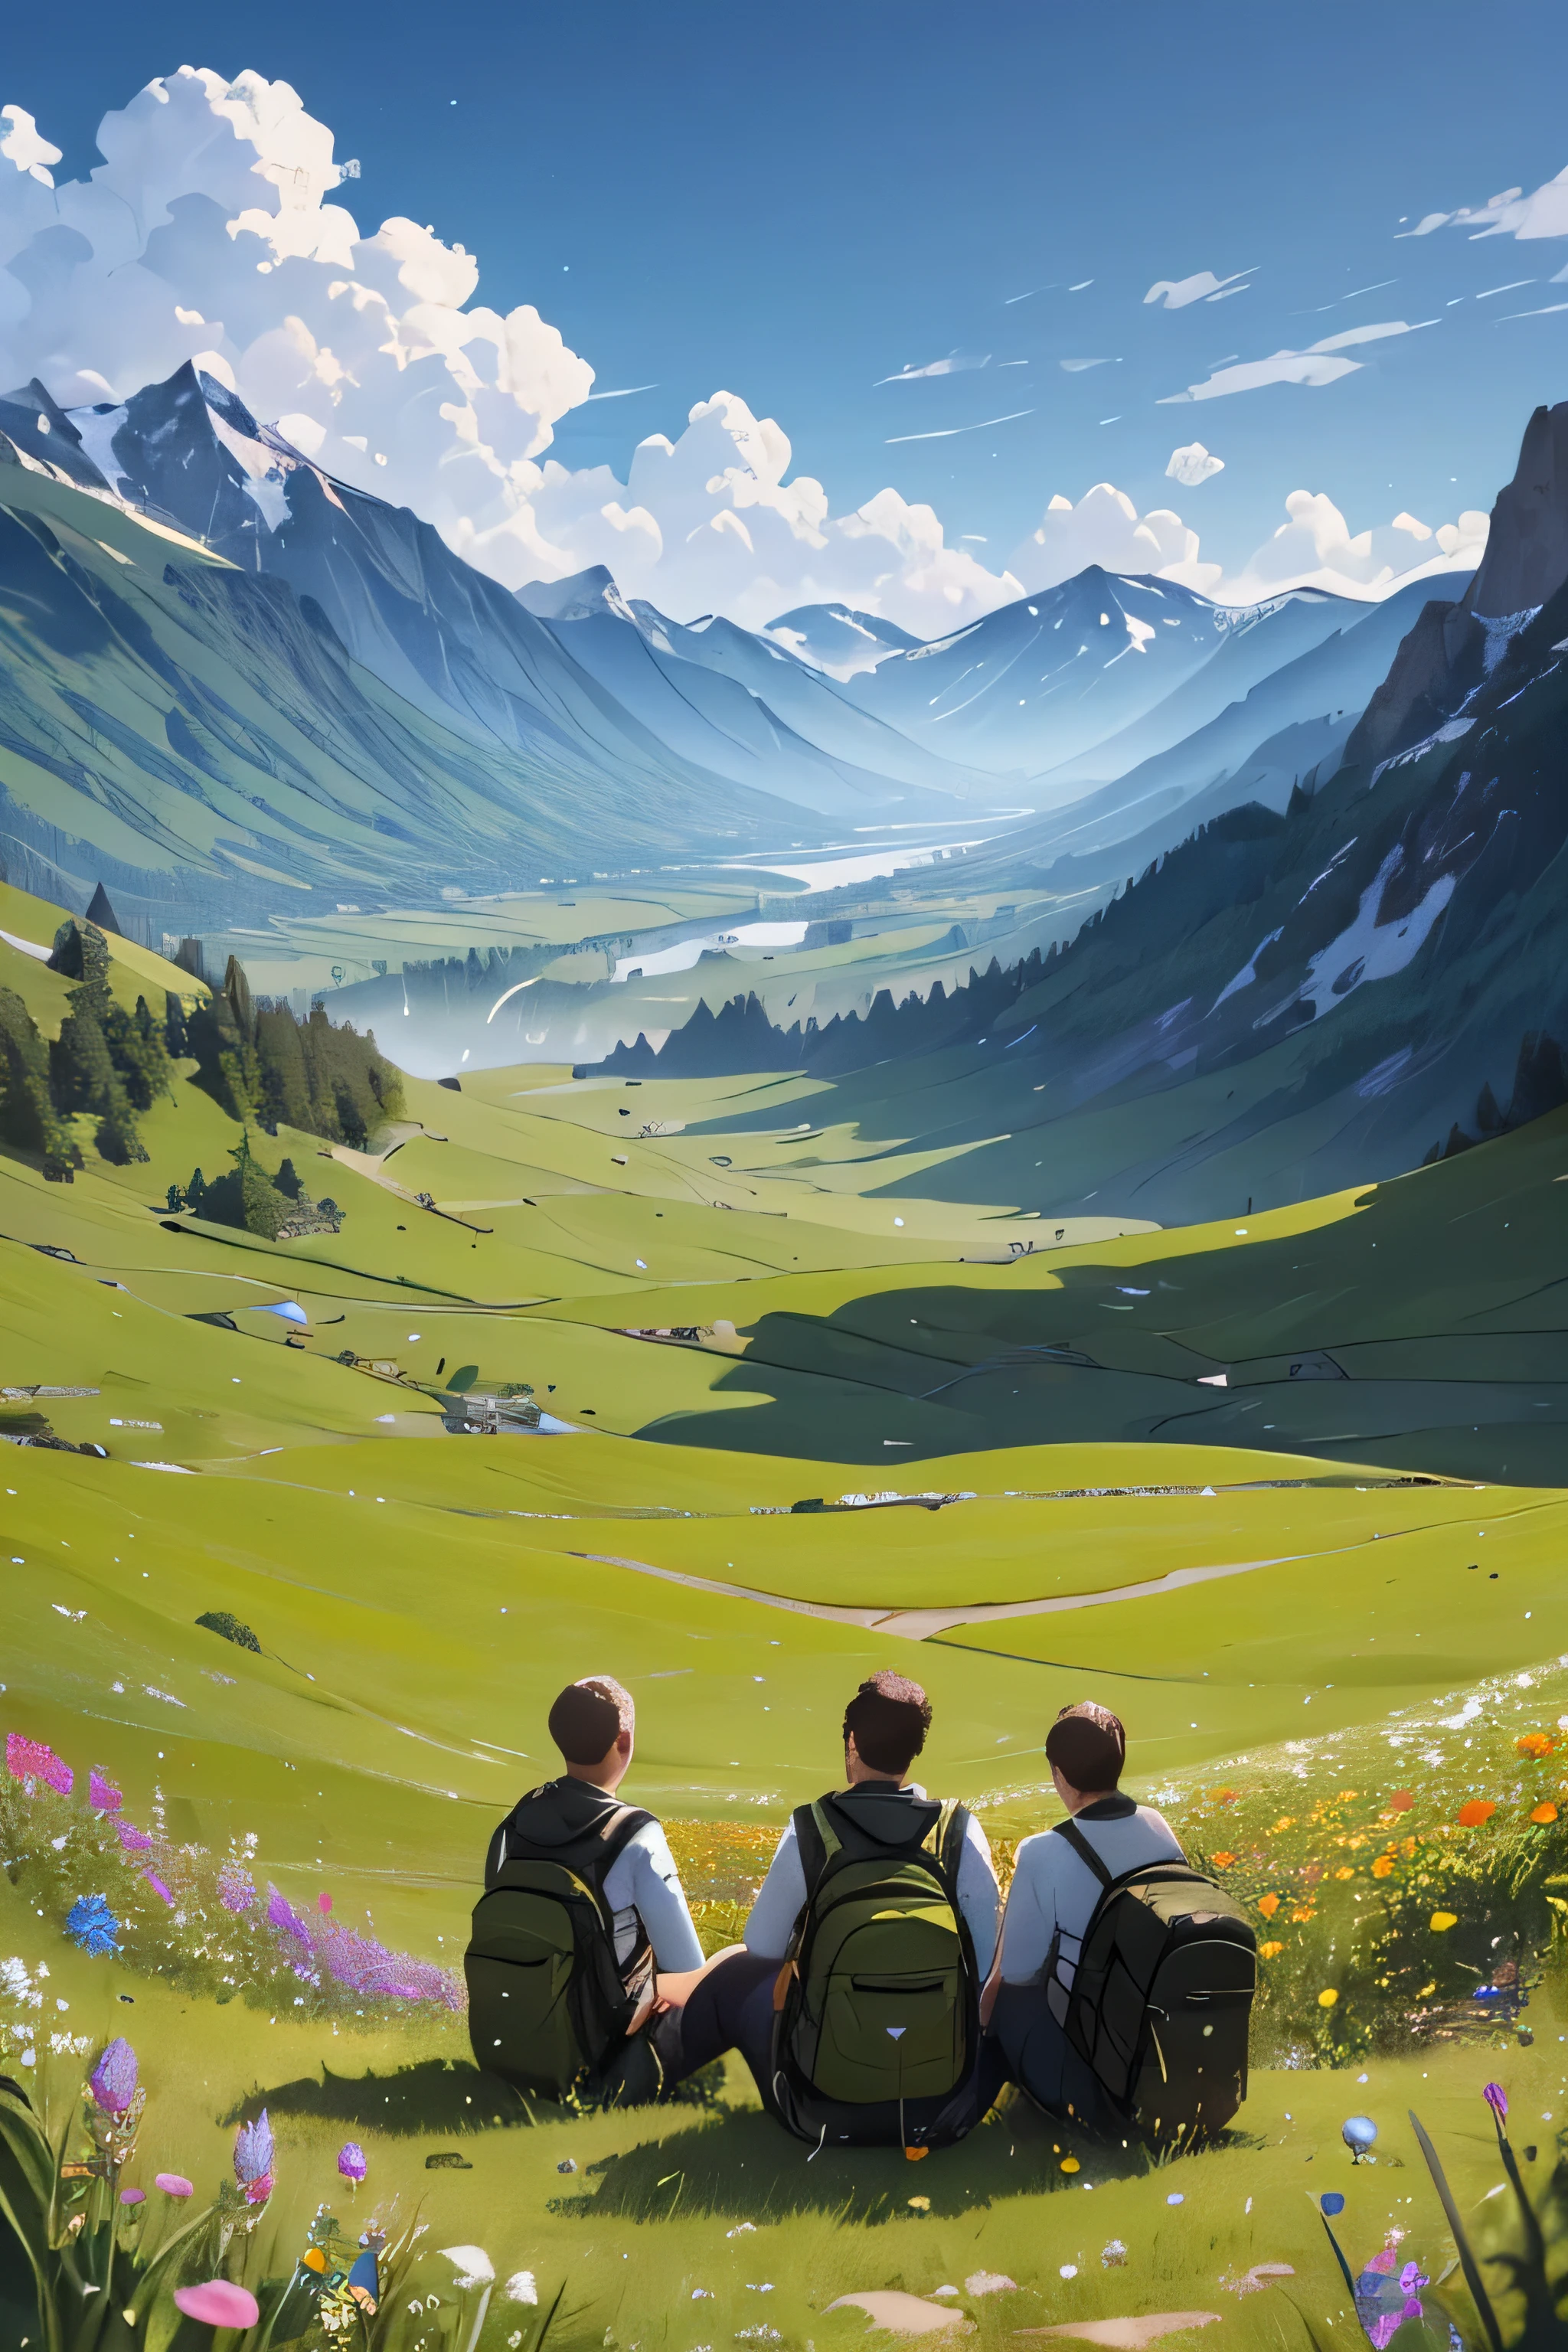 Uma vista de ângulo superior de um grupo de homens sentados em um campo de flores com mochilas olhando para as montanhas à frente.. pintura digital altamente detalhada...Altamente detalhado, Resolução 4k, colorida